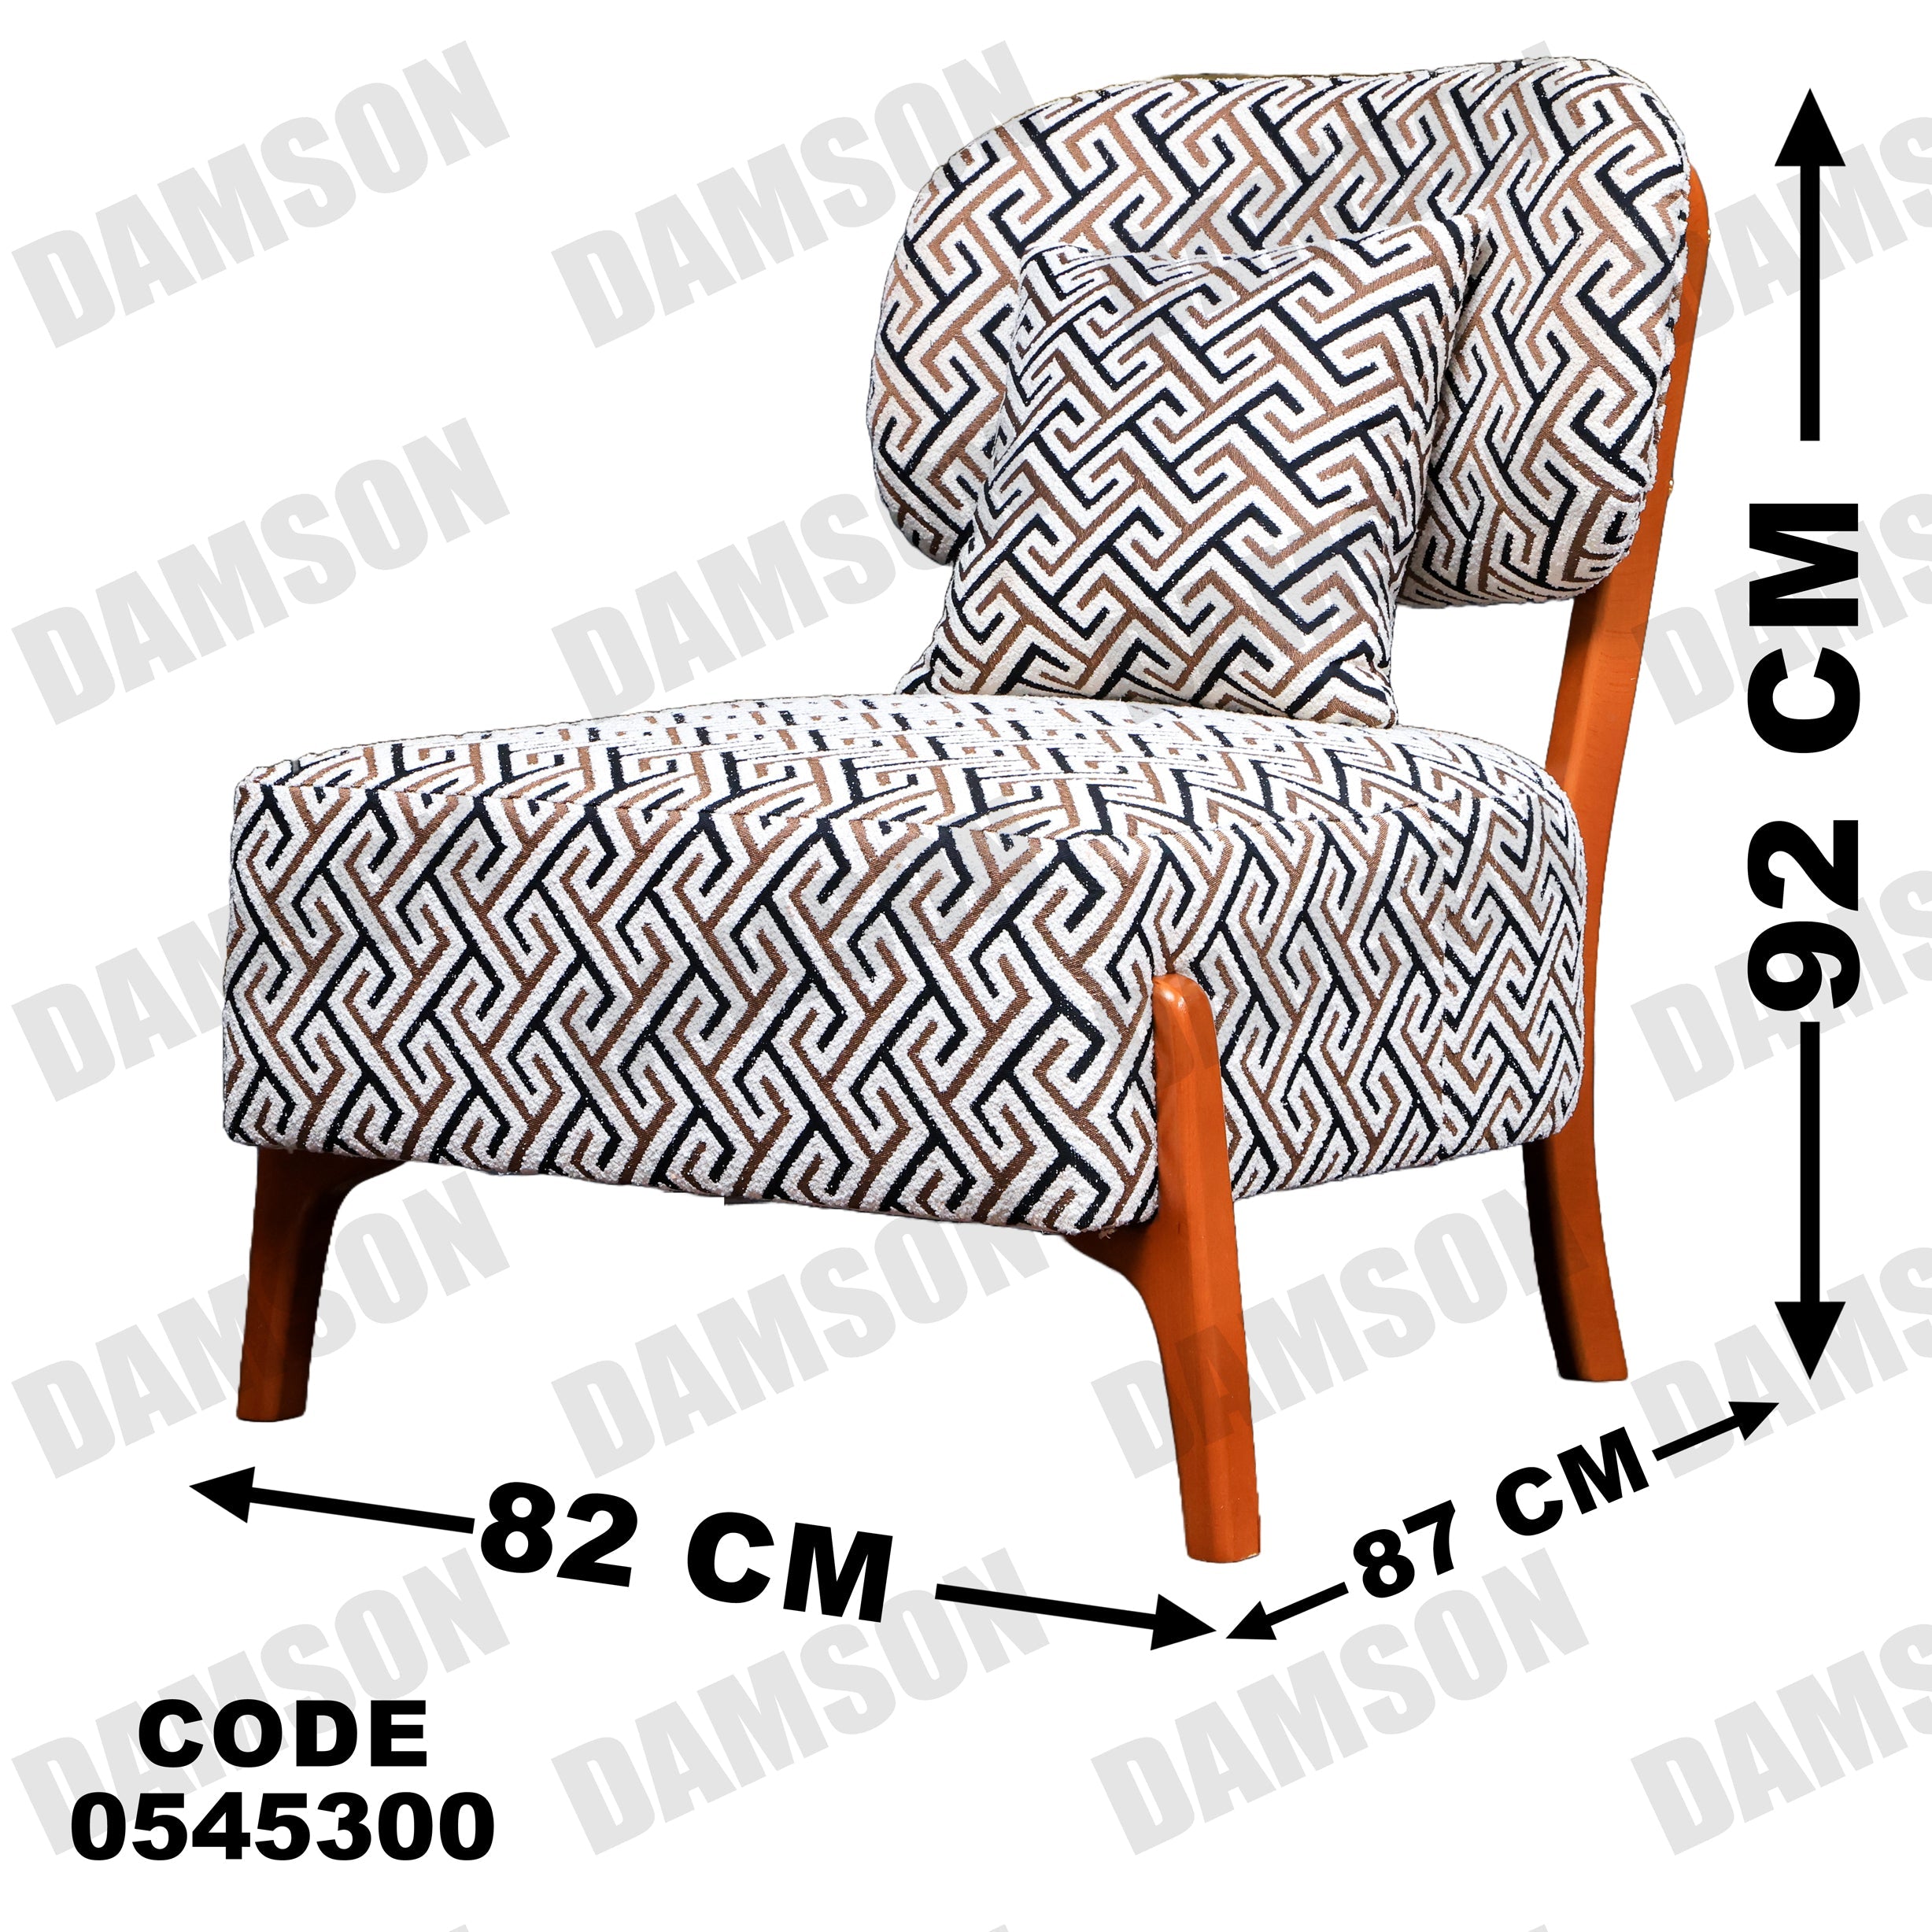 انترية 453 - Damson Furnitureانترية 453